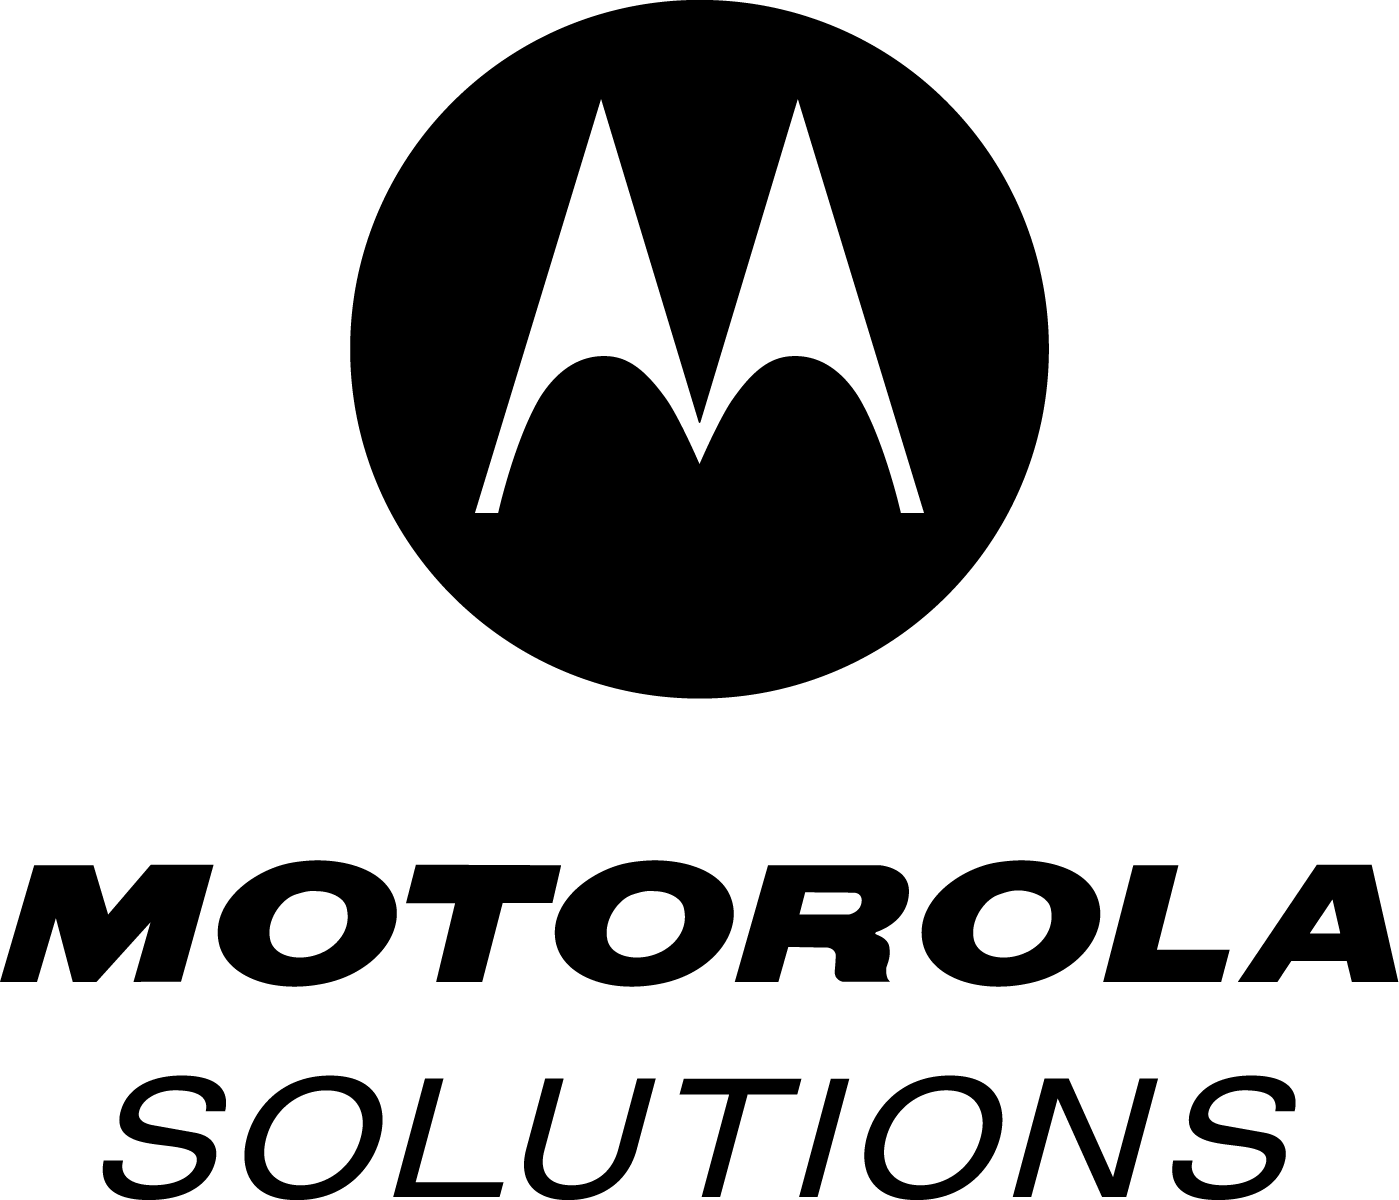 MOTOROLLA SOLUTIONS